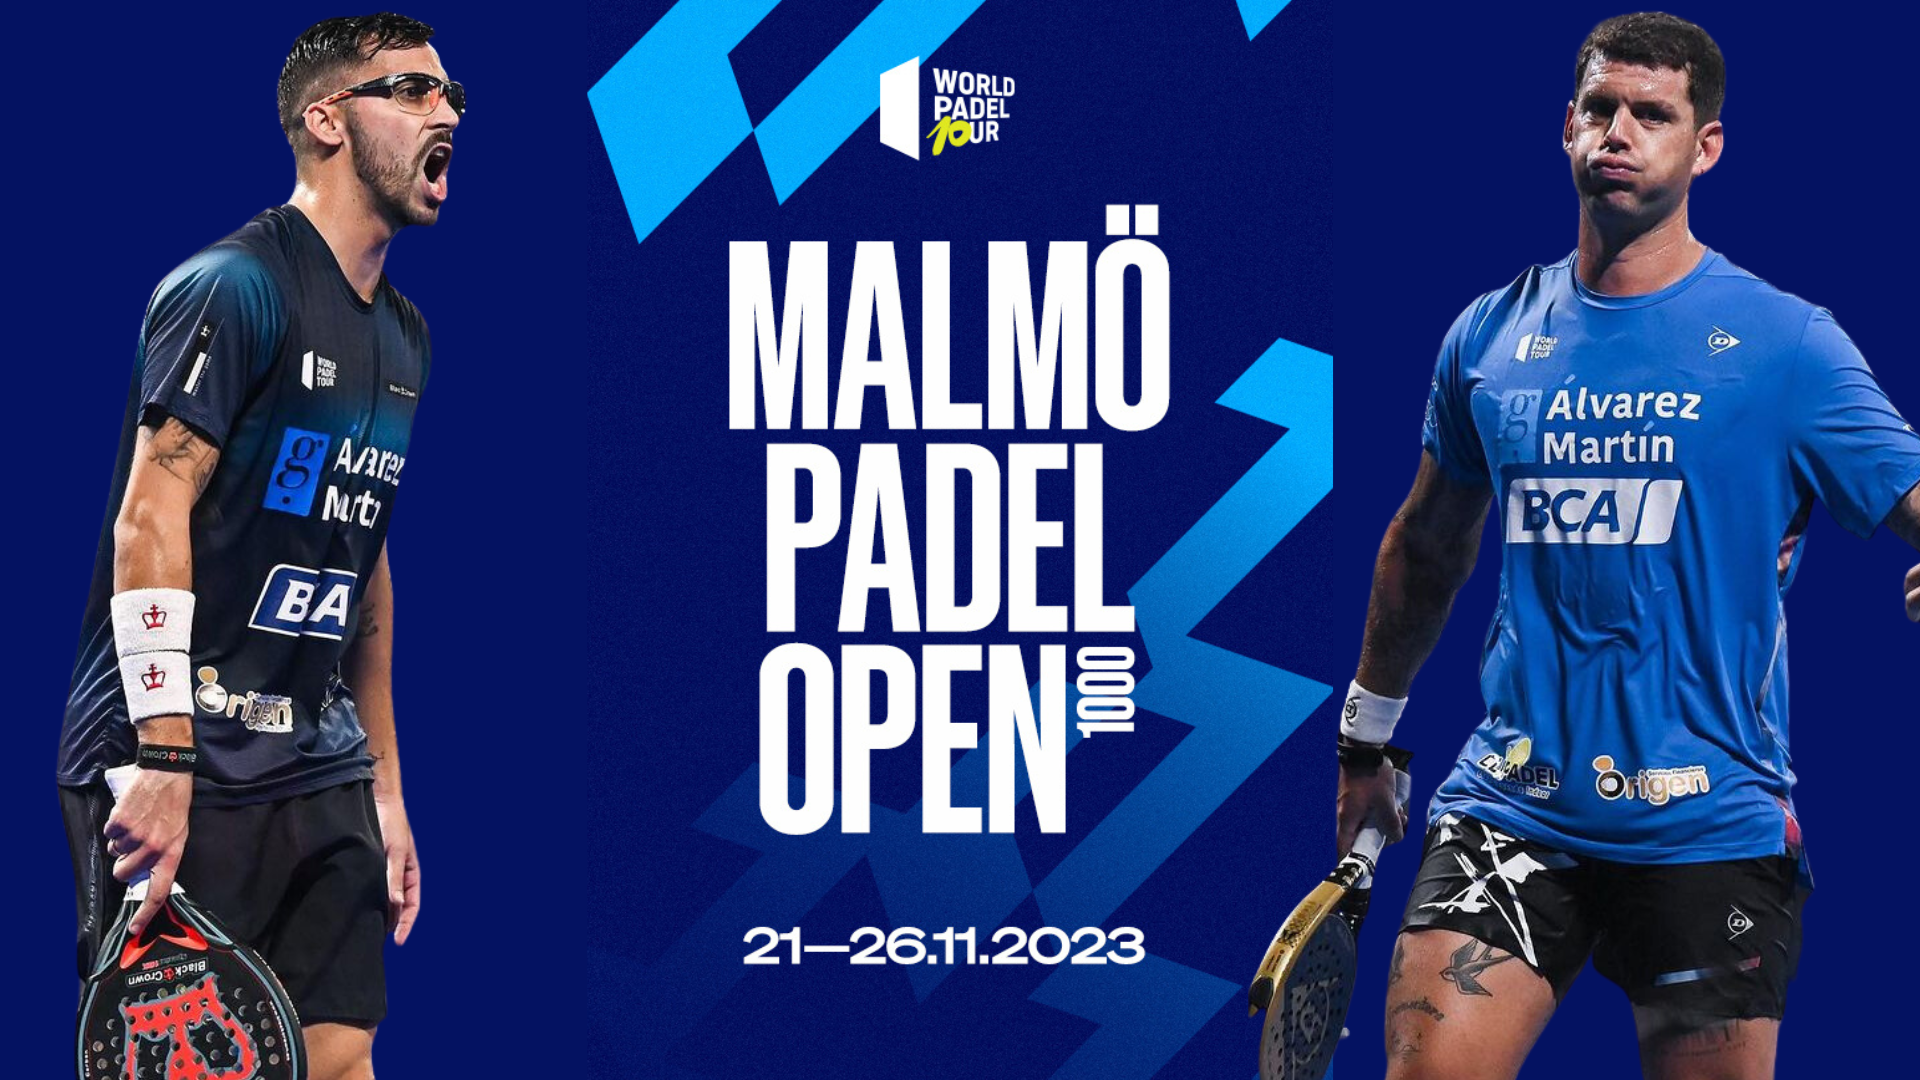 WPT Malmö Open – I tavoli sono chiusi, Moyano e Gil non saranno contenti…